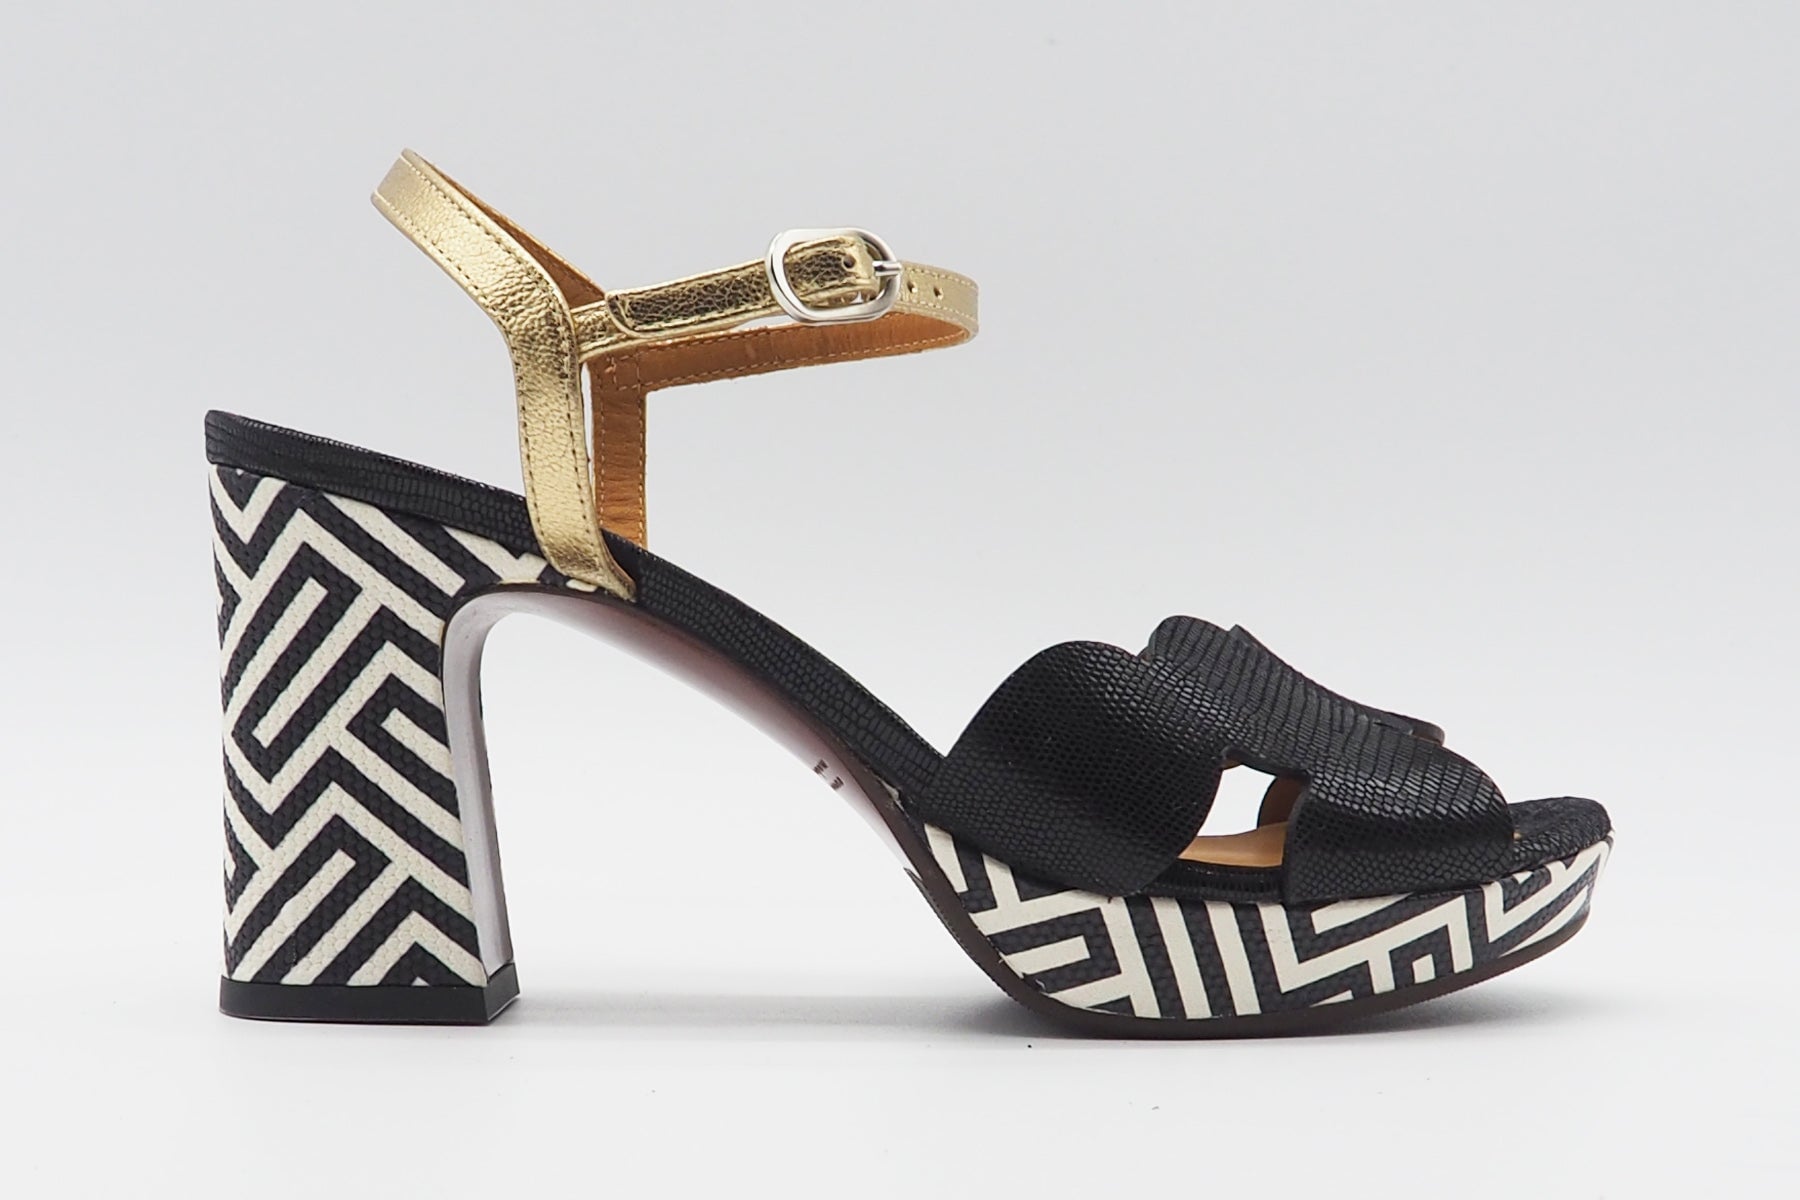 Damen Sandale aus Leder in Schwarz & Weiß - Kelis - Absatz 9cm Damen Sandalen Chie Mihara 